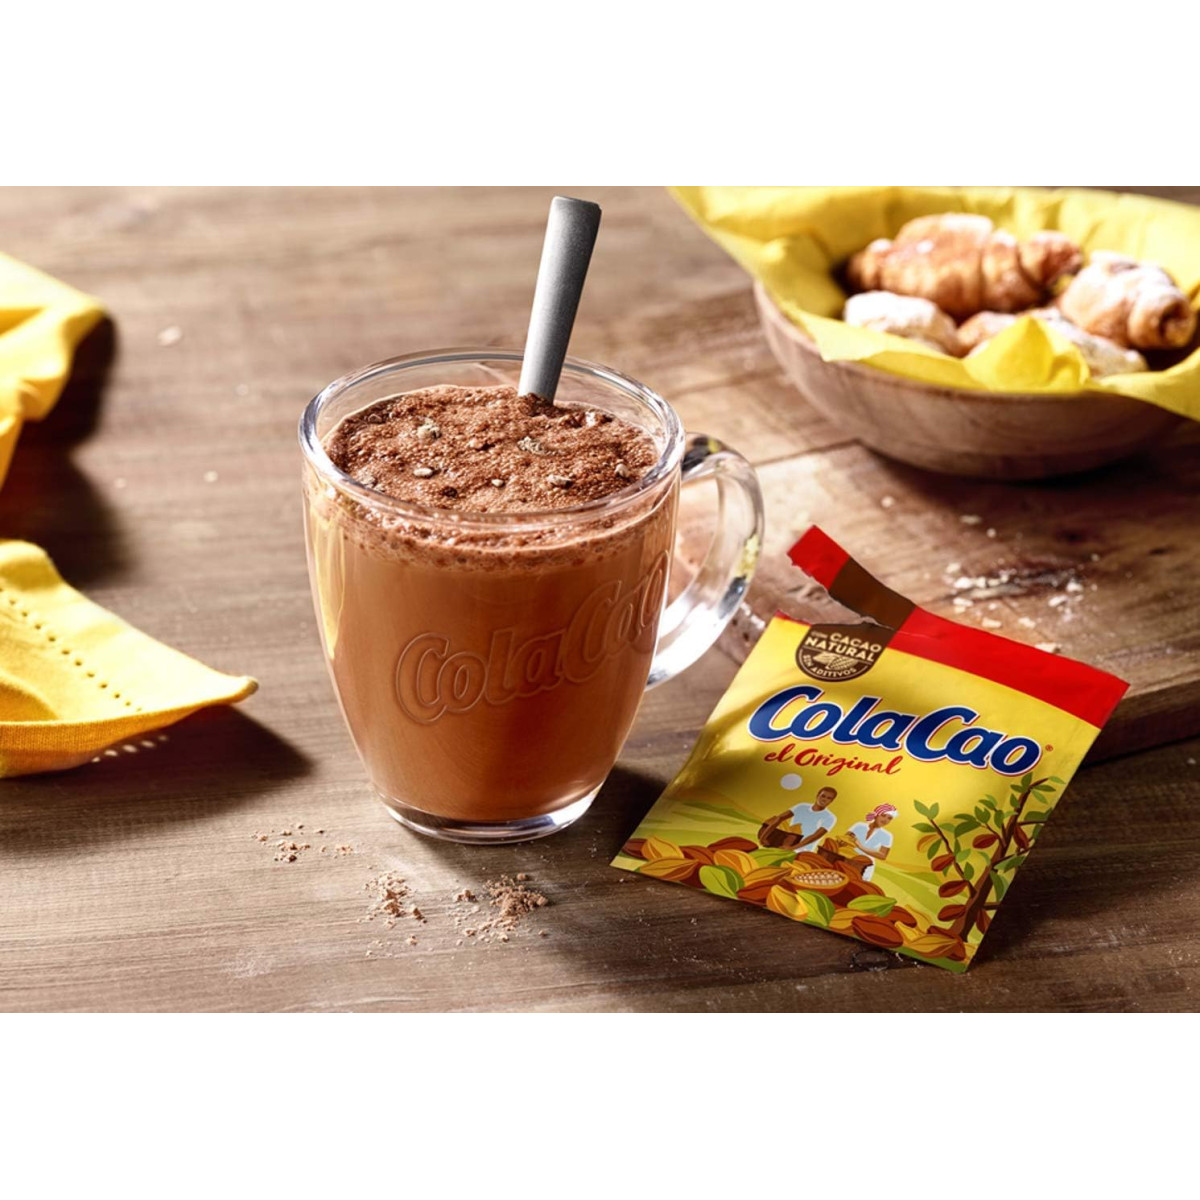 Cola Cao Colacao Original Cacao en polvo soluble 1,75 kg